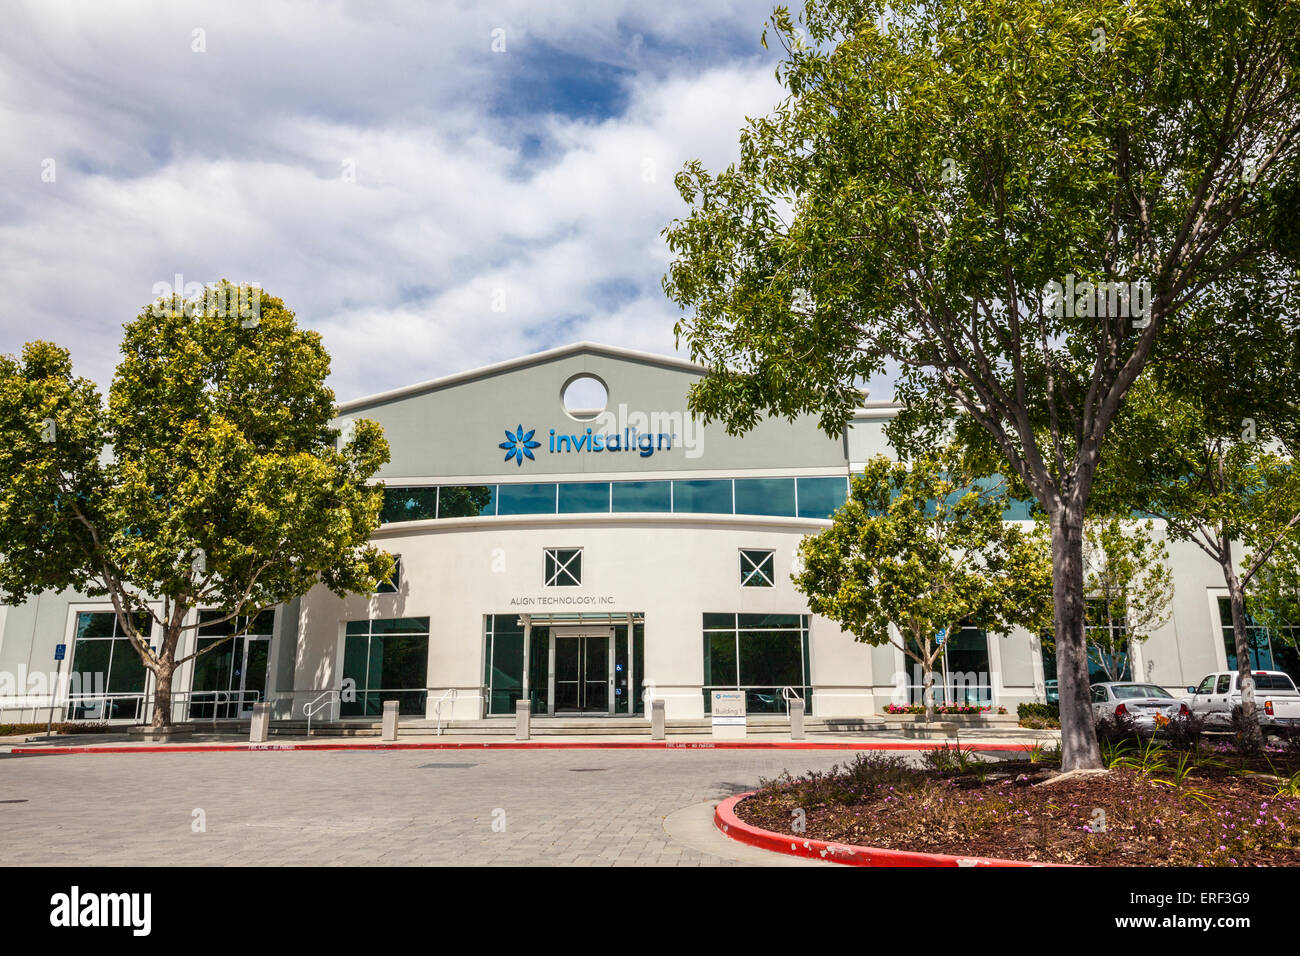 Invisalign, Align Technology Inc. à San Jose en Californie Banque D'Images